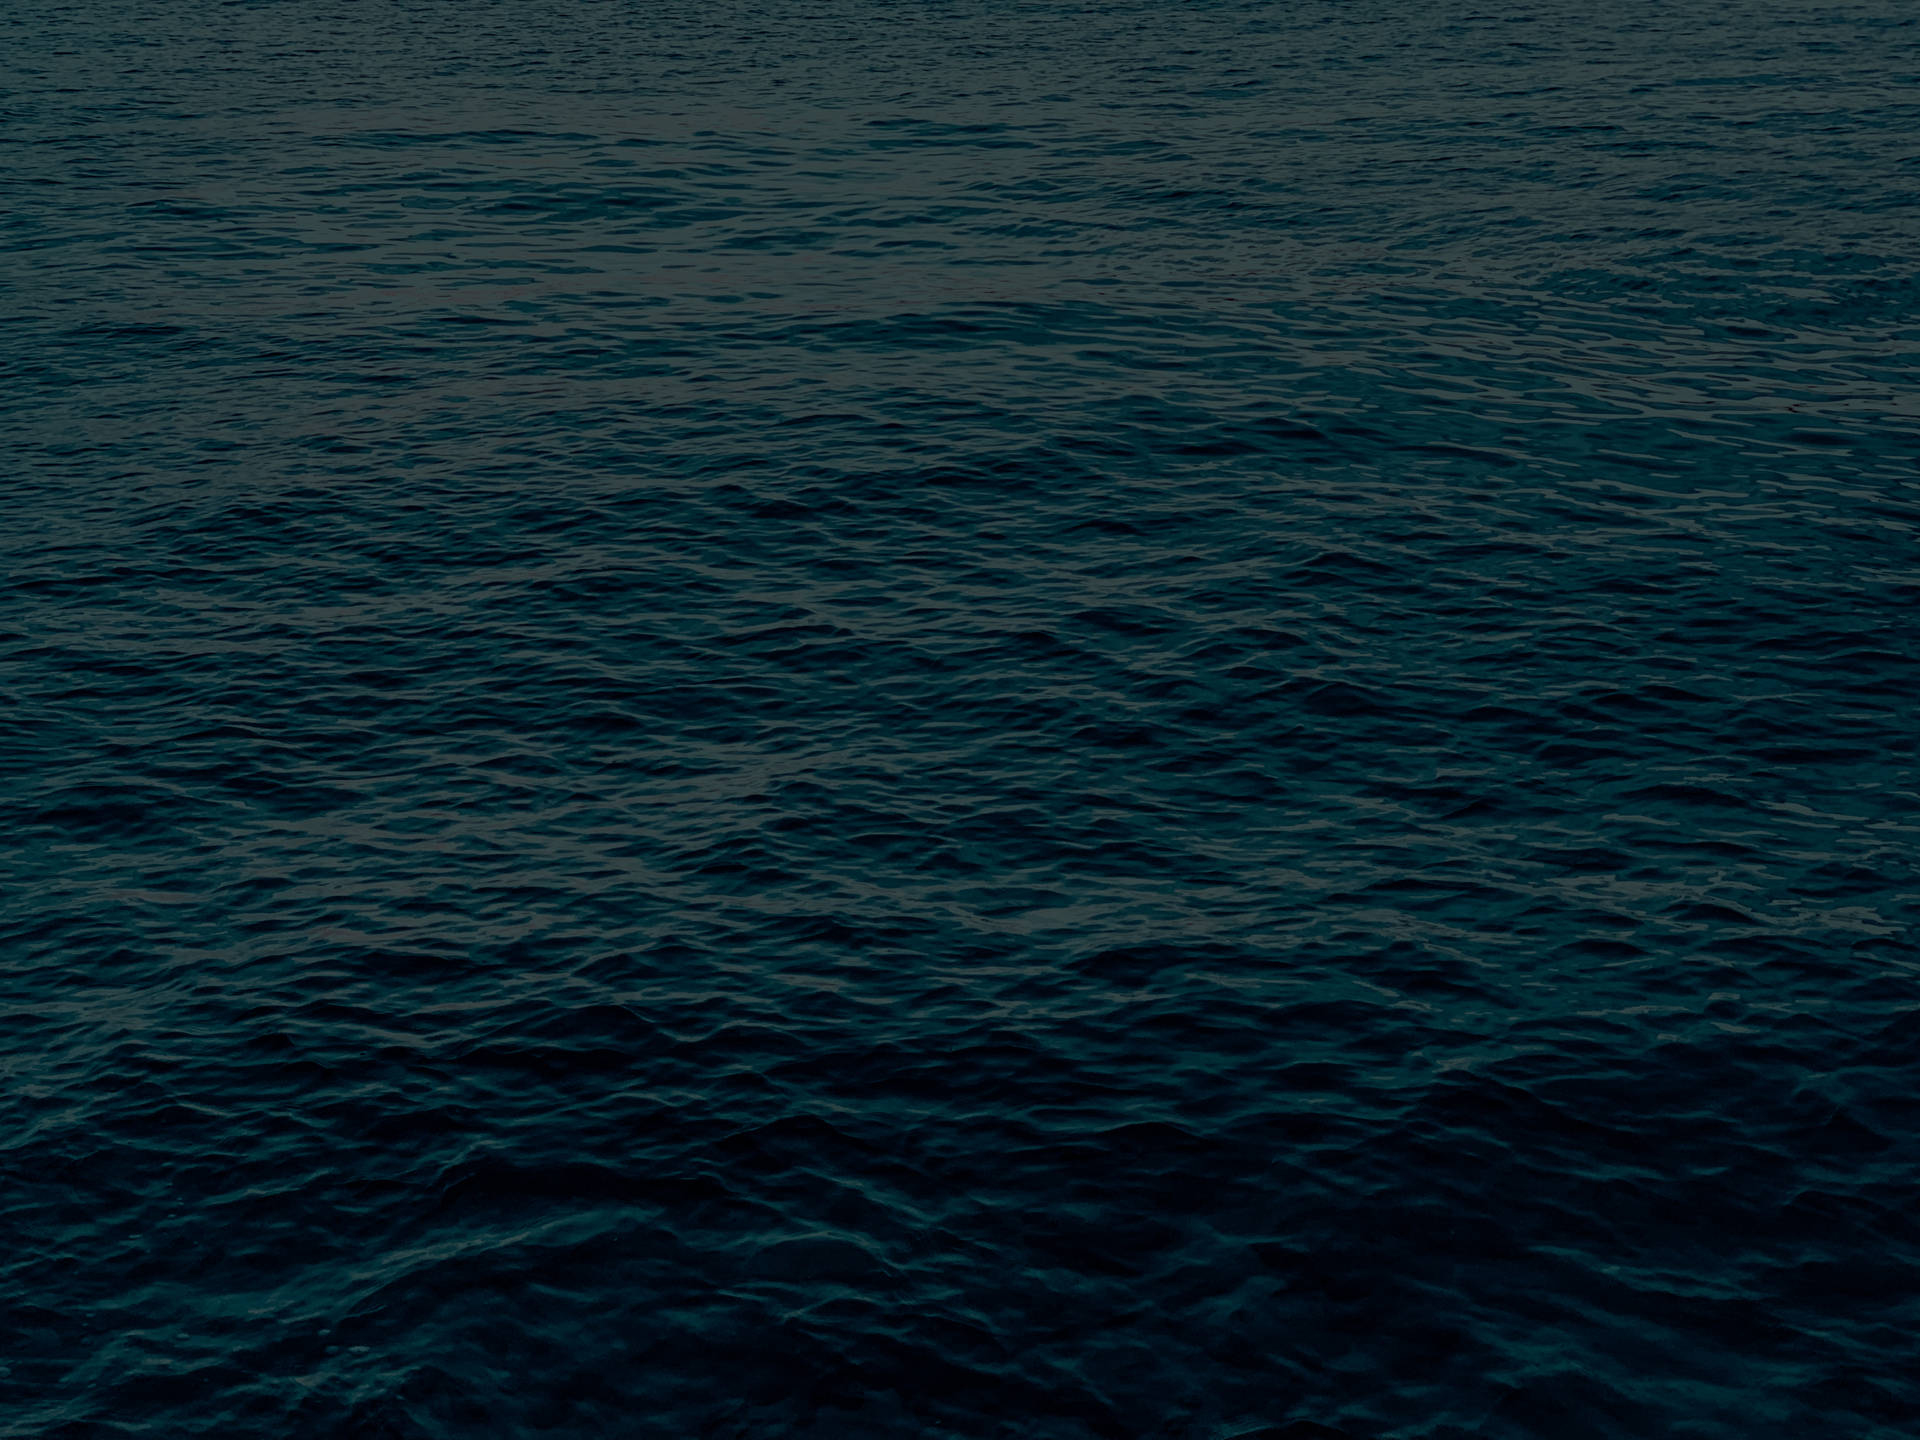 ♆ Evènement pre-ouverture : au large (écourté X) Dark-ocean-waves-blue-aesthetic-ipad-alumk4axl0ja4wqs